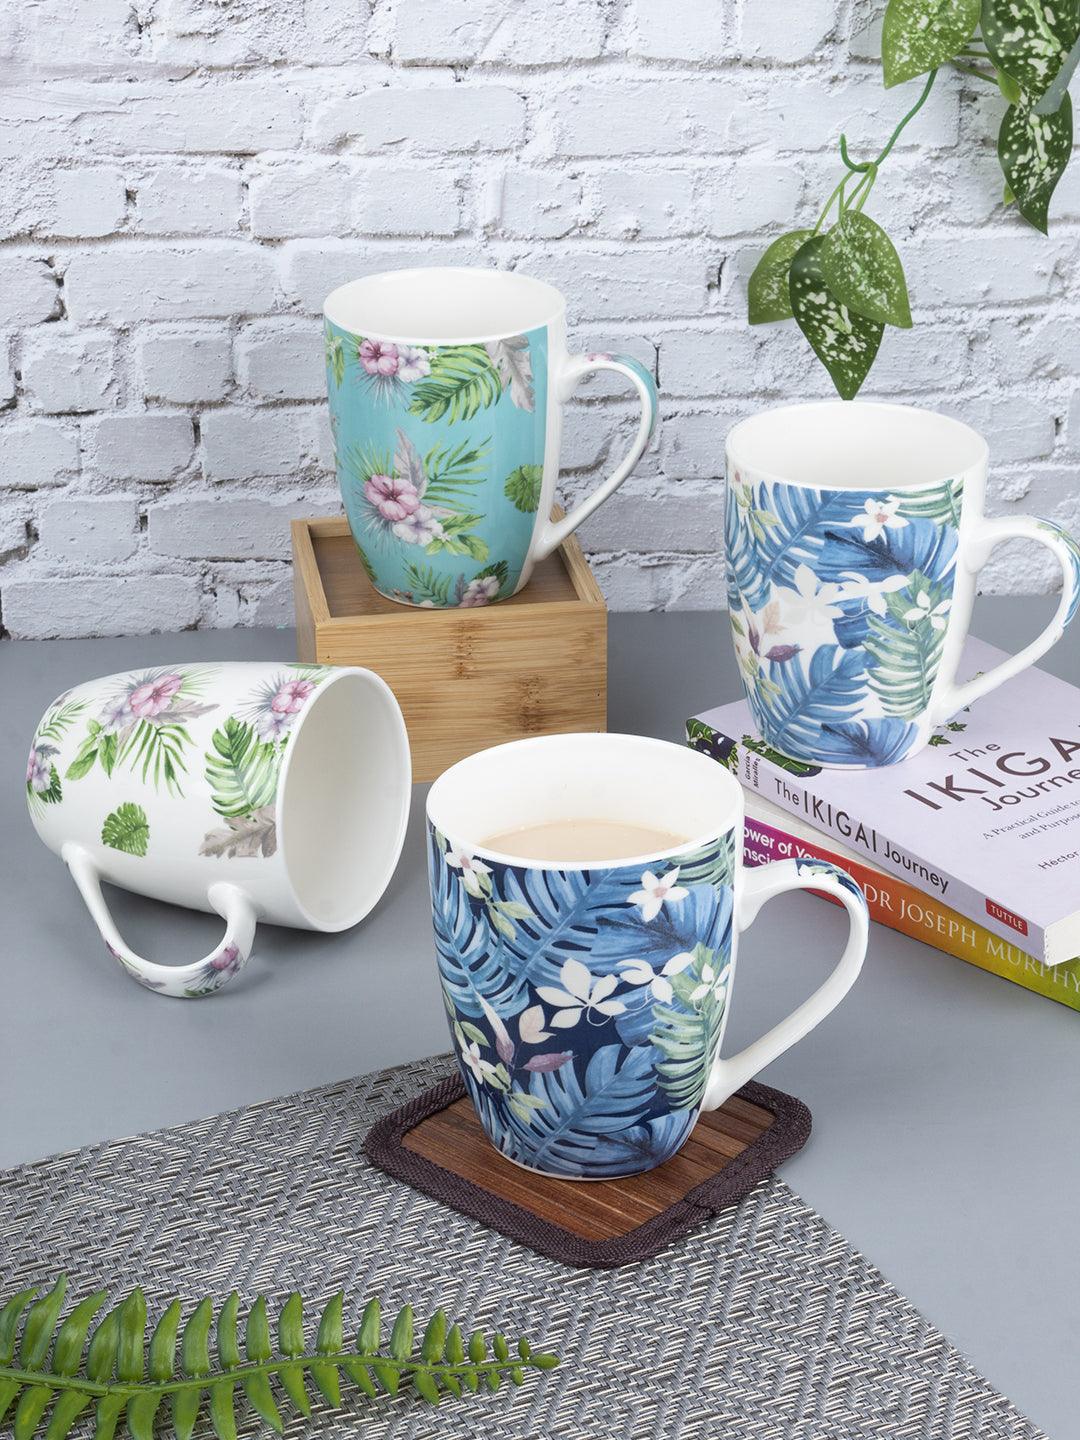 Unique Floral Ceramic Tea & Coffee Mug (350 mL) - MARKET 99